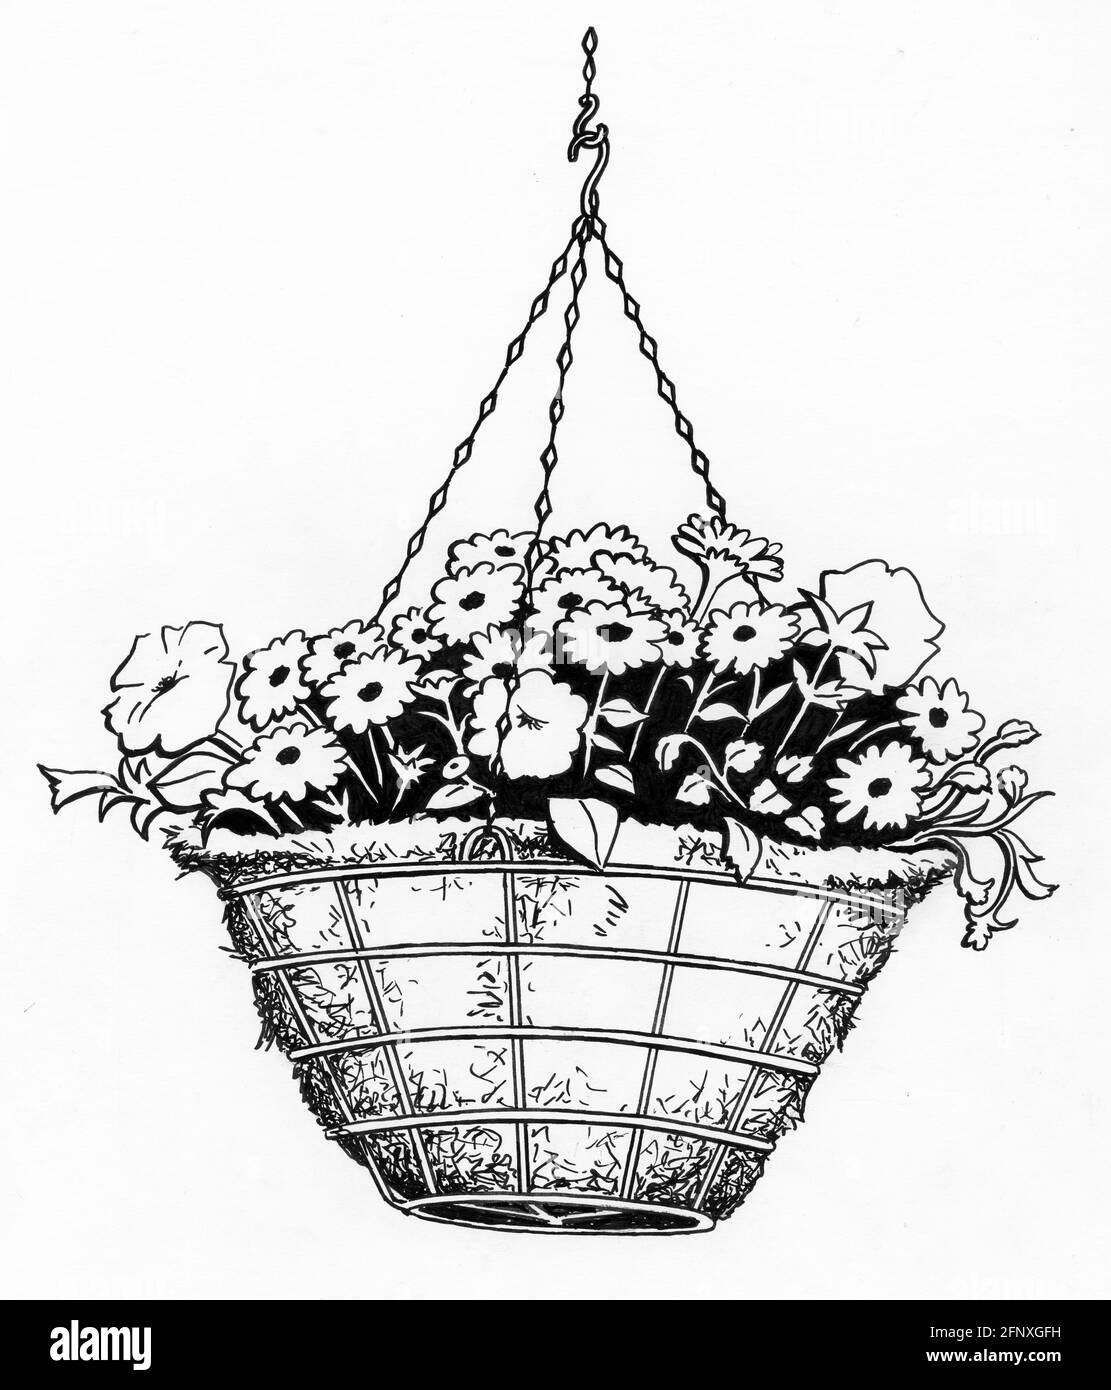 Dessin d'un panier suspendu complet avec un sphagnum mousse et jeunes plantes qui ont été plantées Banque D'Images